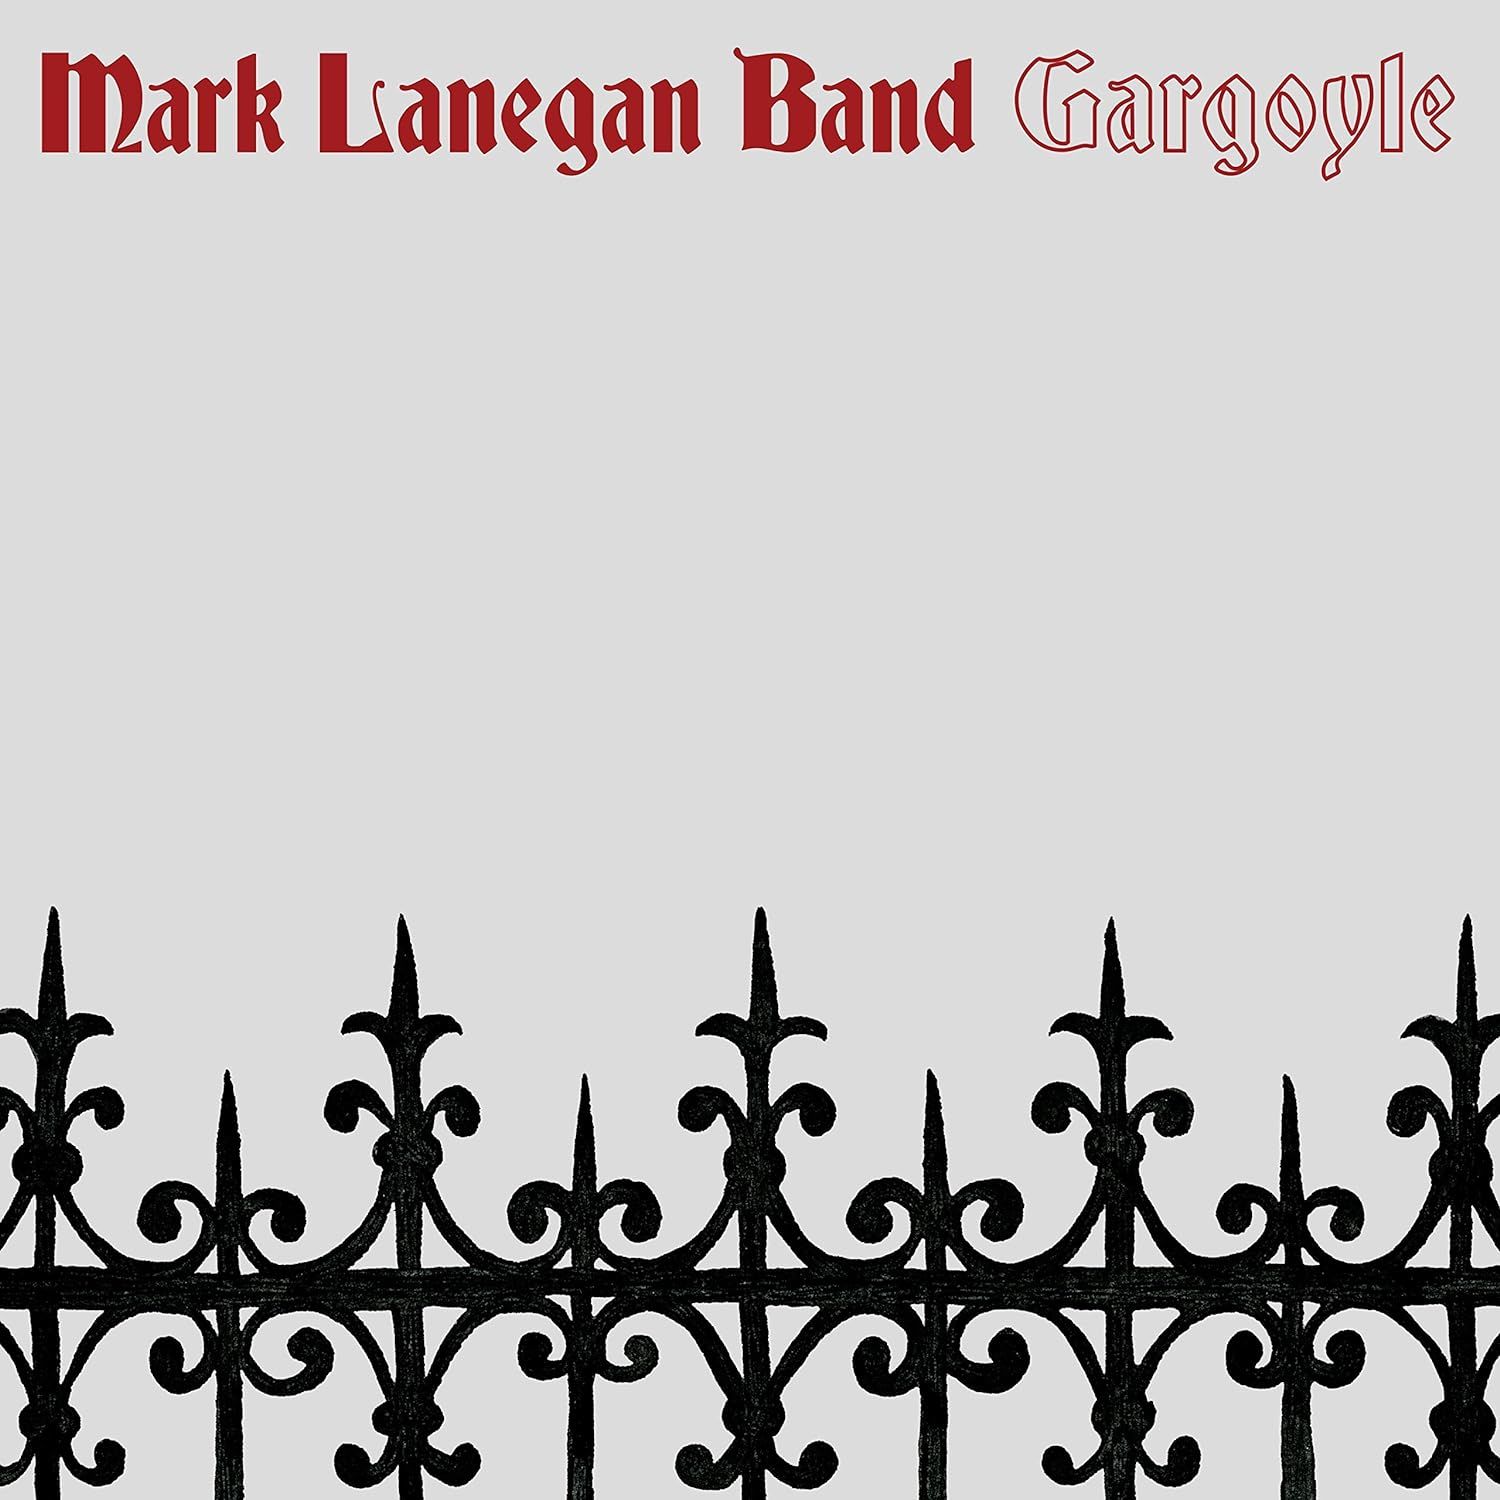 MARK LANEGAN - GARGOYLE (2017) - LP GATEFOLD SIFIR PLAK